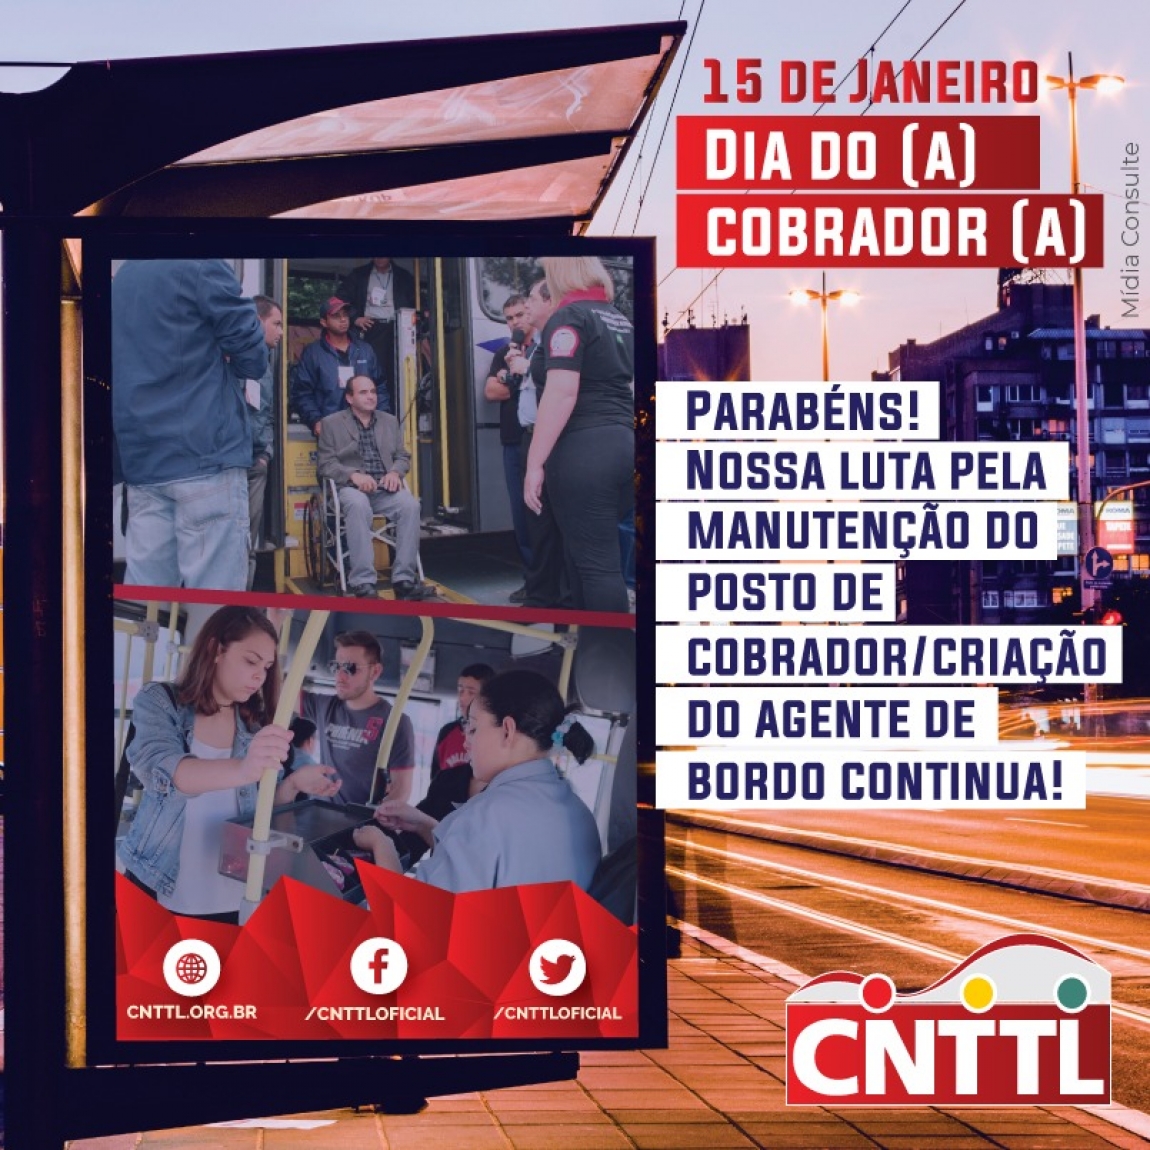 Imagem de 15 de janeiro: CNTTL parabeniza a profissão de cobrador (a)